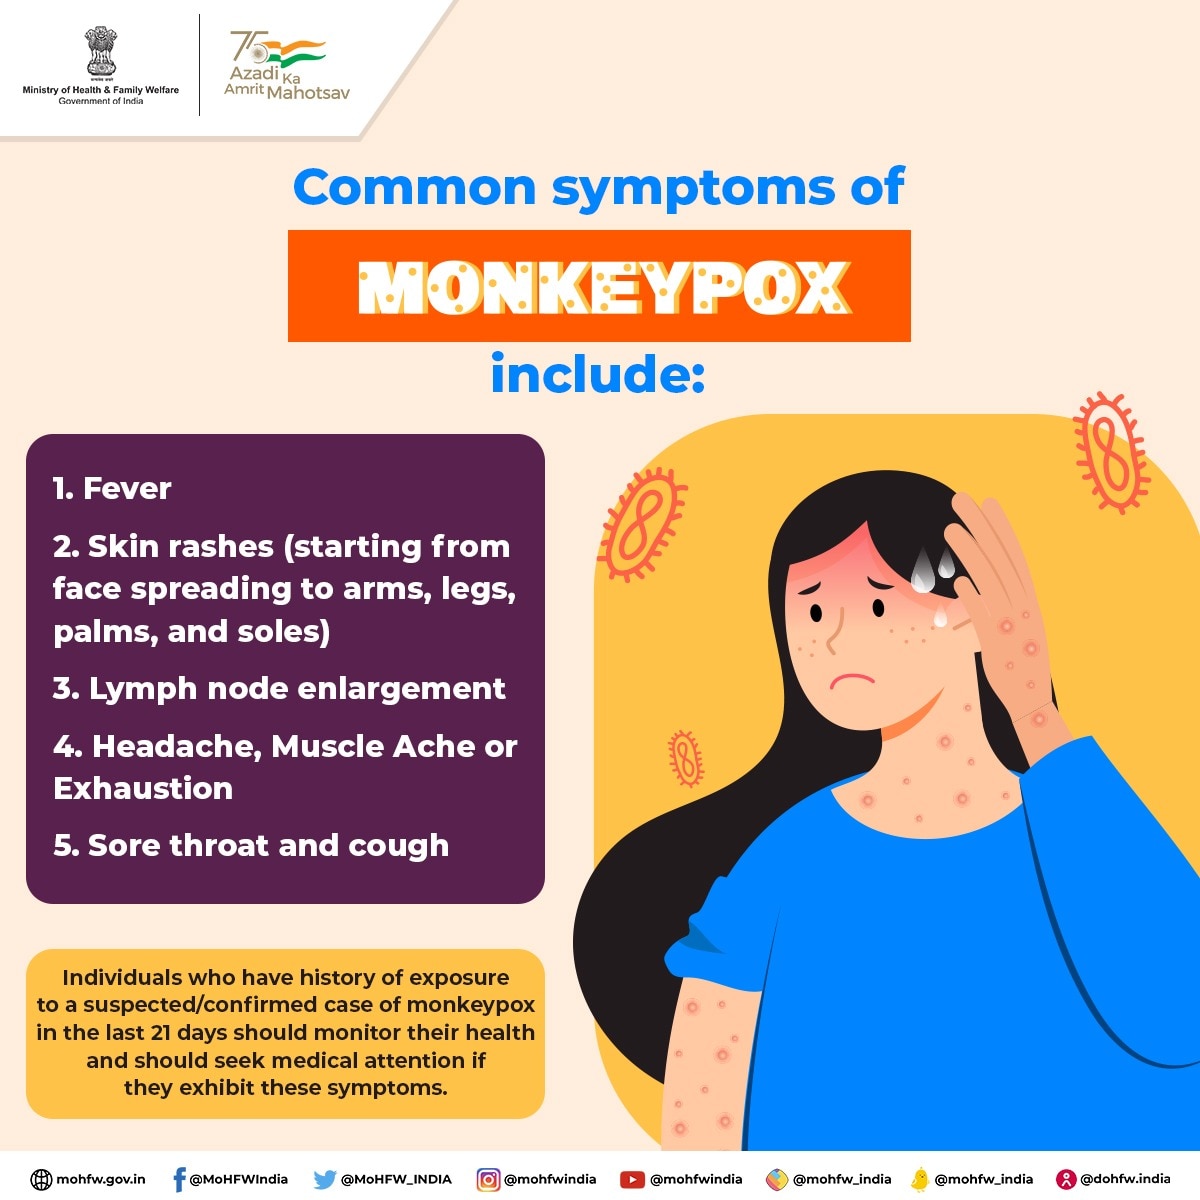 Measures against Monkeypox